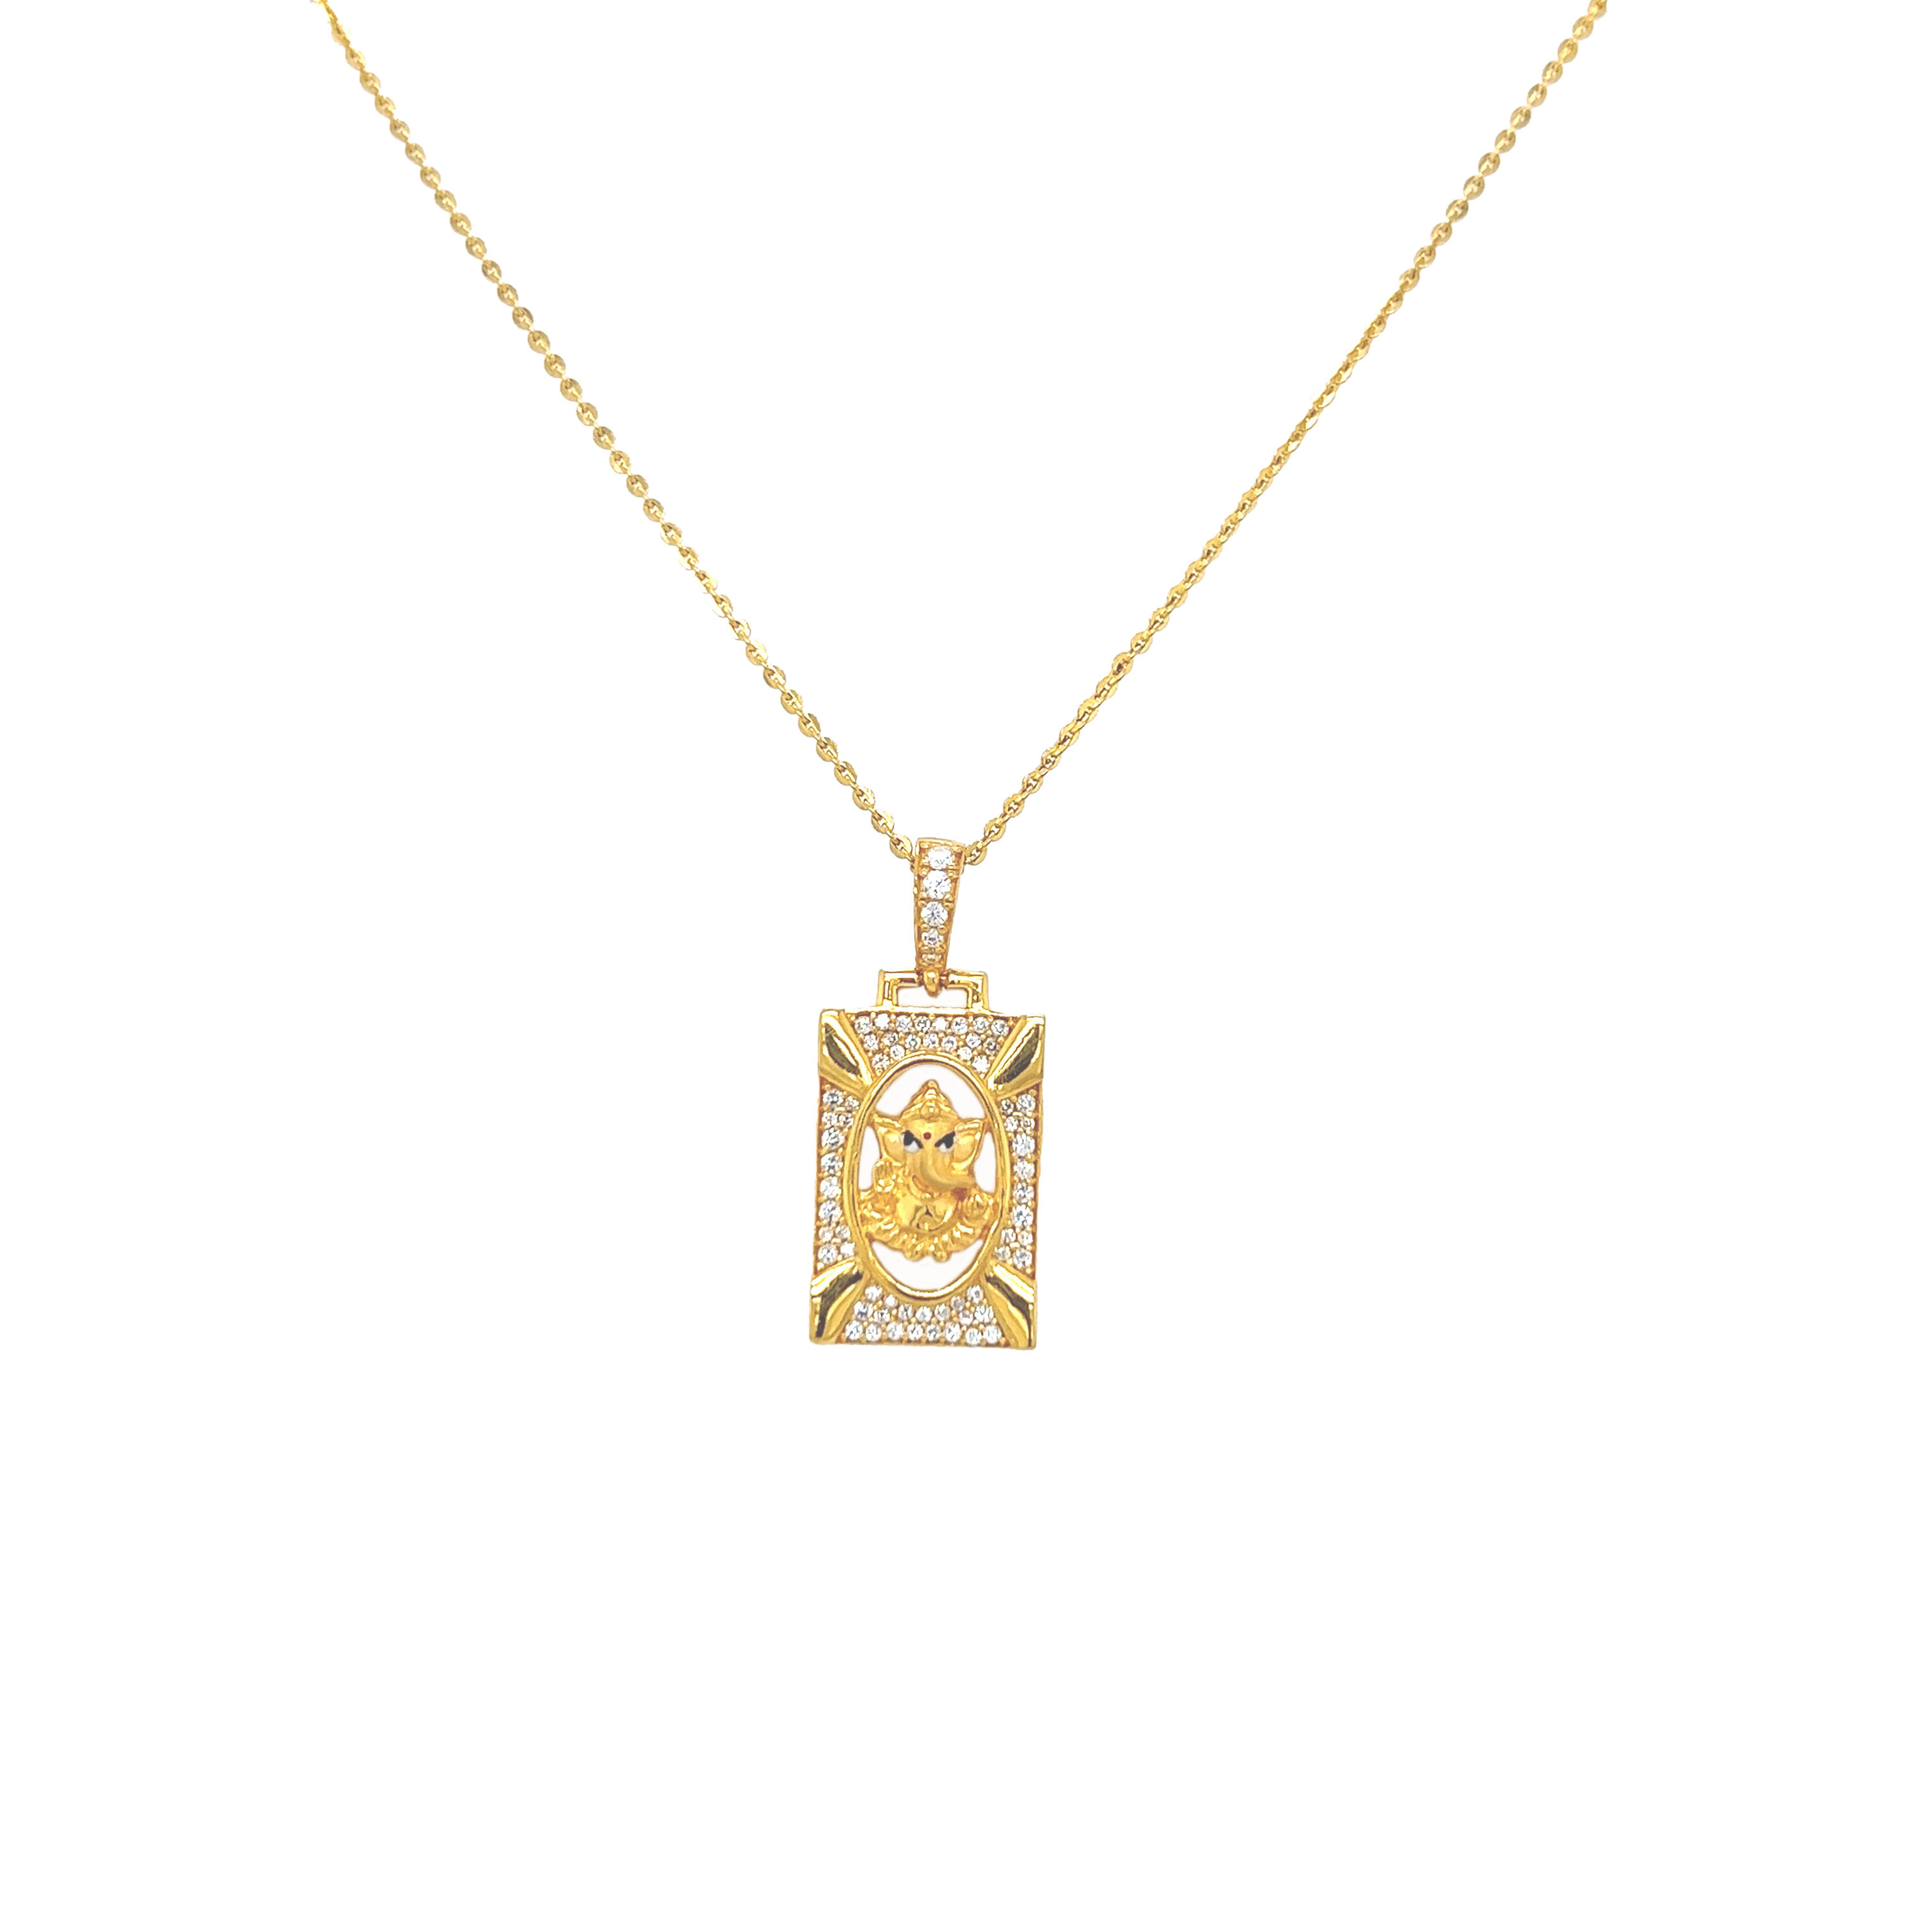 Modakapriyaya Gold Pendant